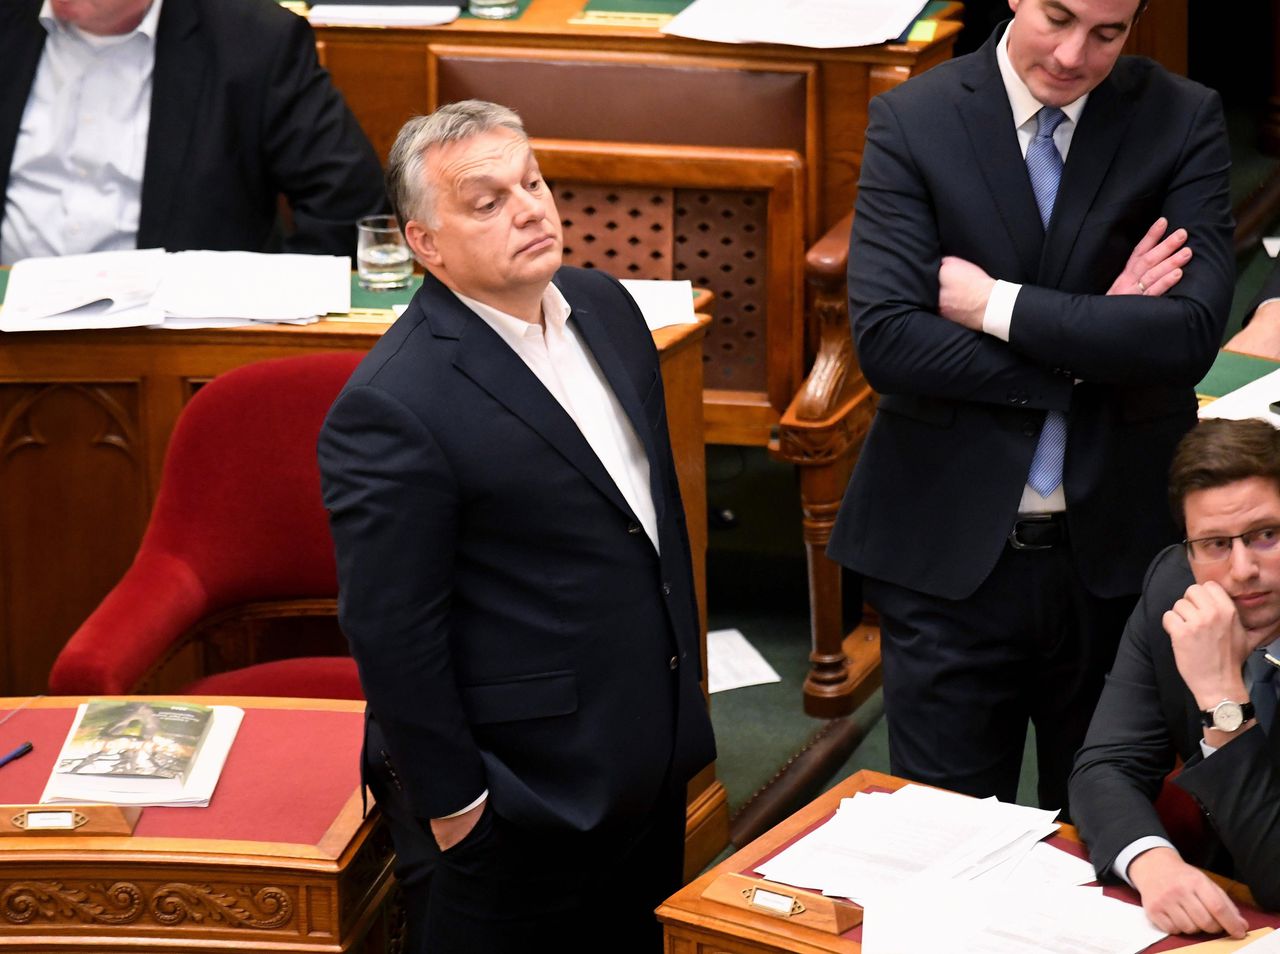 Hongarije kreunt onder arbeidsemigratie, maar premier Orbán houdt immigratie uiterst beperkt